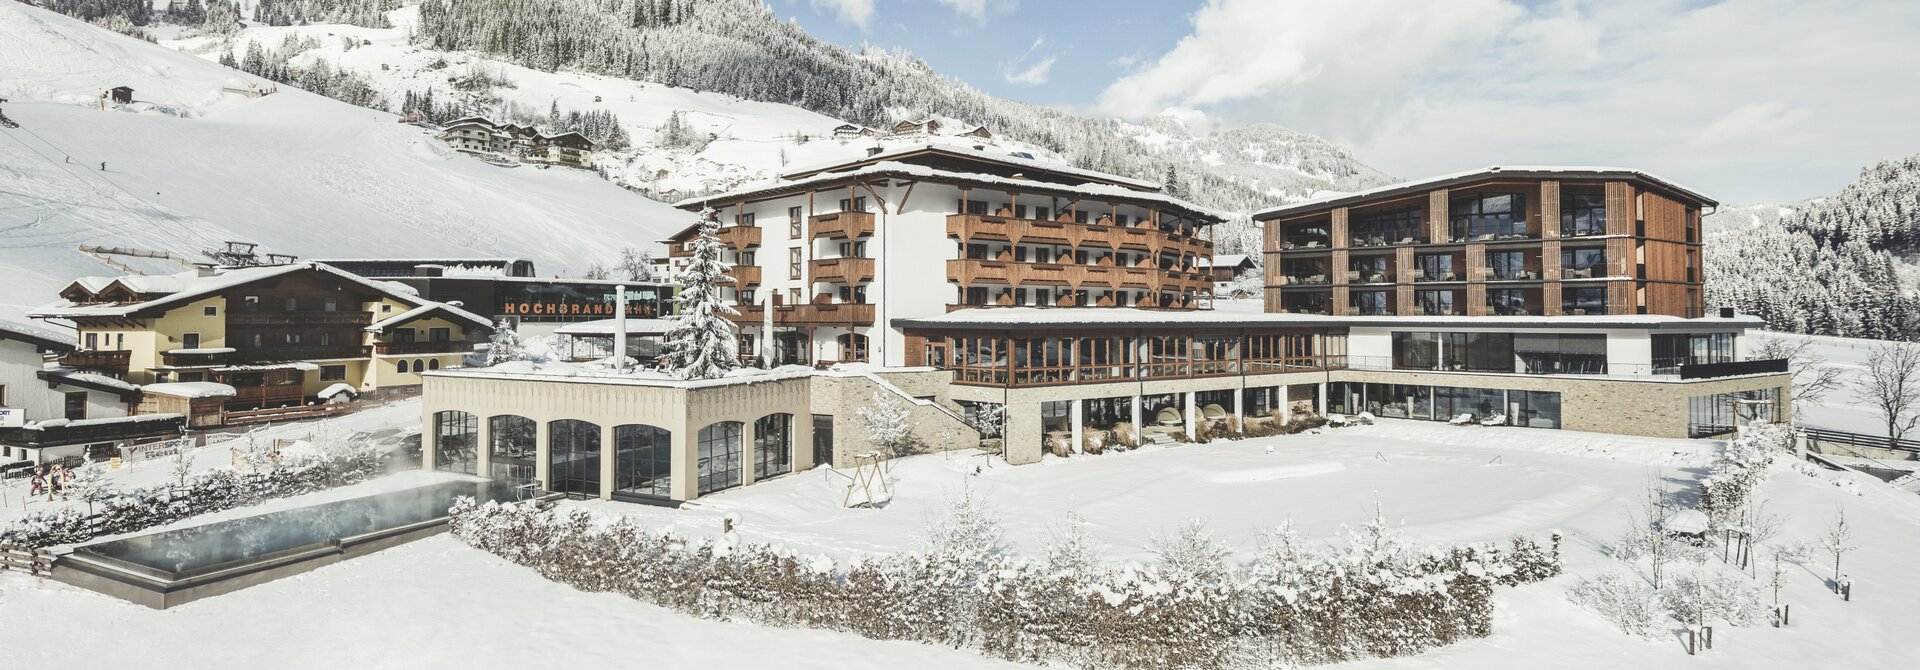 Hotel in verschneiter Winterlandschaft | 4 Sterne Superior Wellnesshotel Nesslerhof, Wellnesshotel Salzburger Land